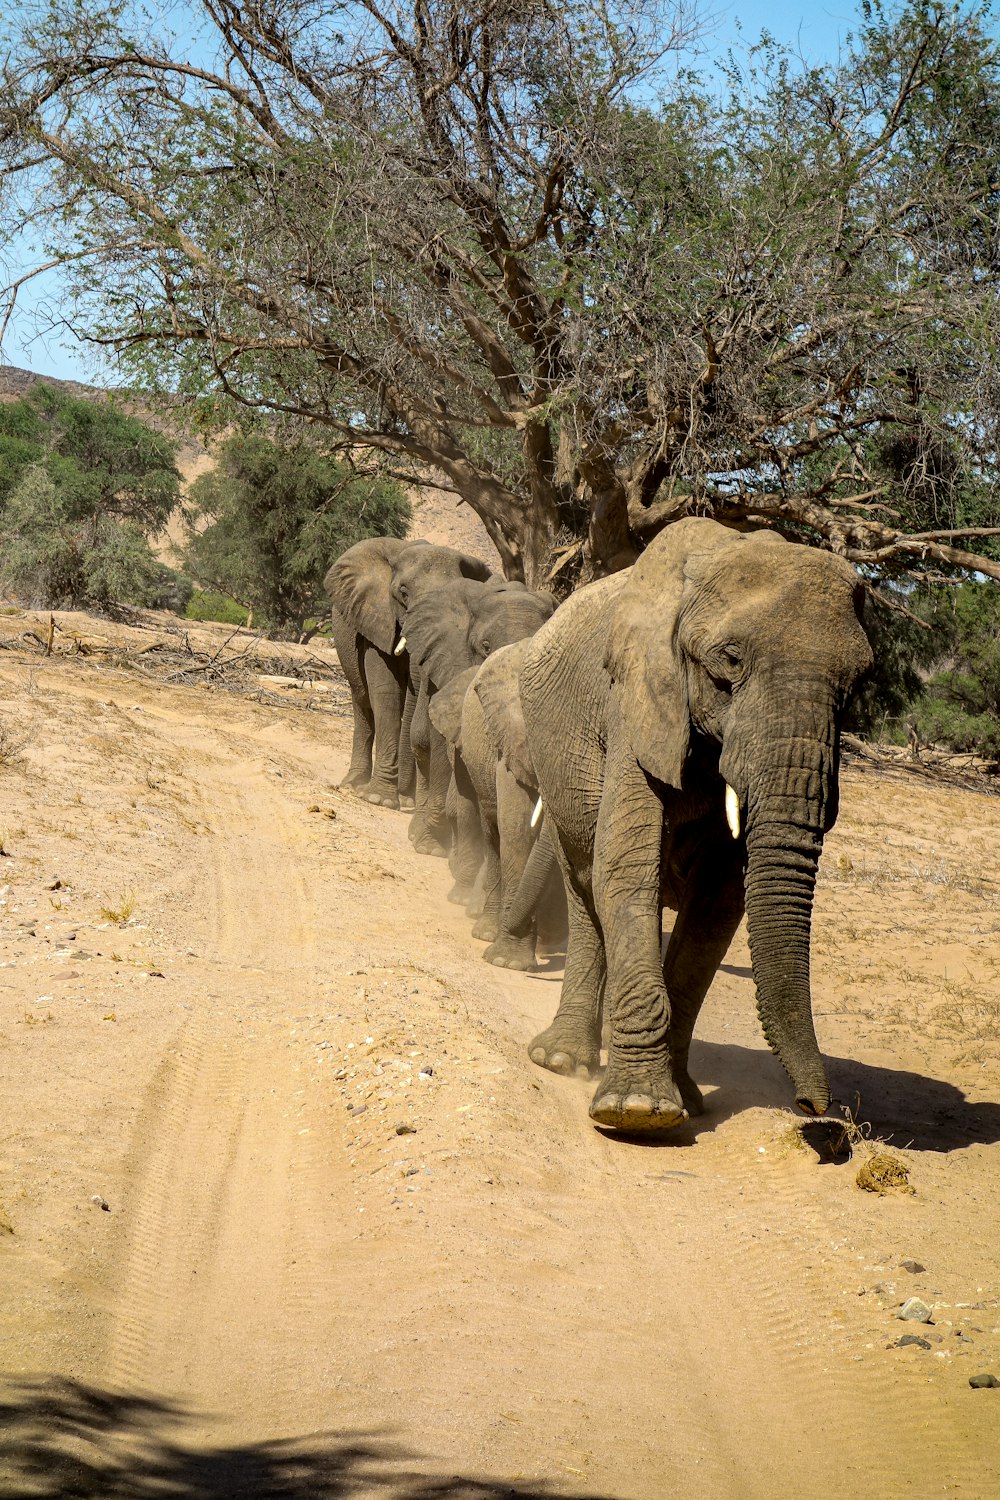 a herd of elephants walking down a dirt road